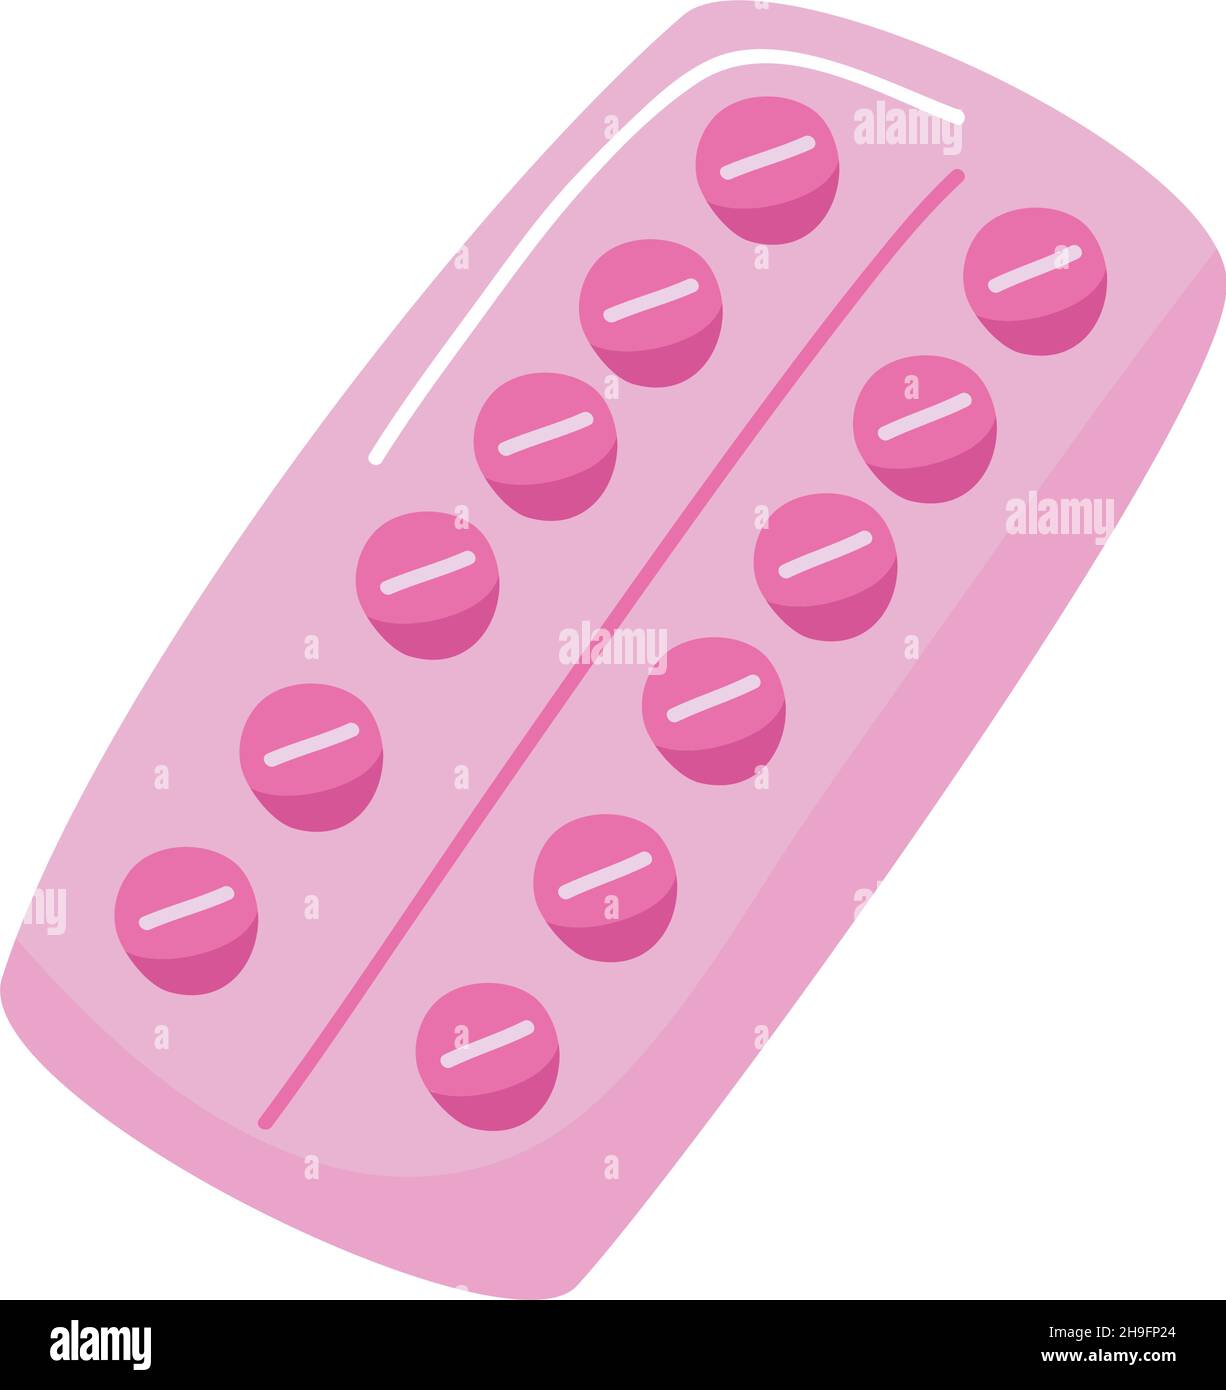 Top 172+ Imagenes de pastillas anticonceptivas para dibujar -  